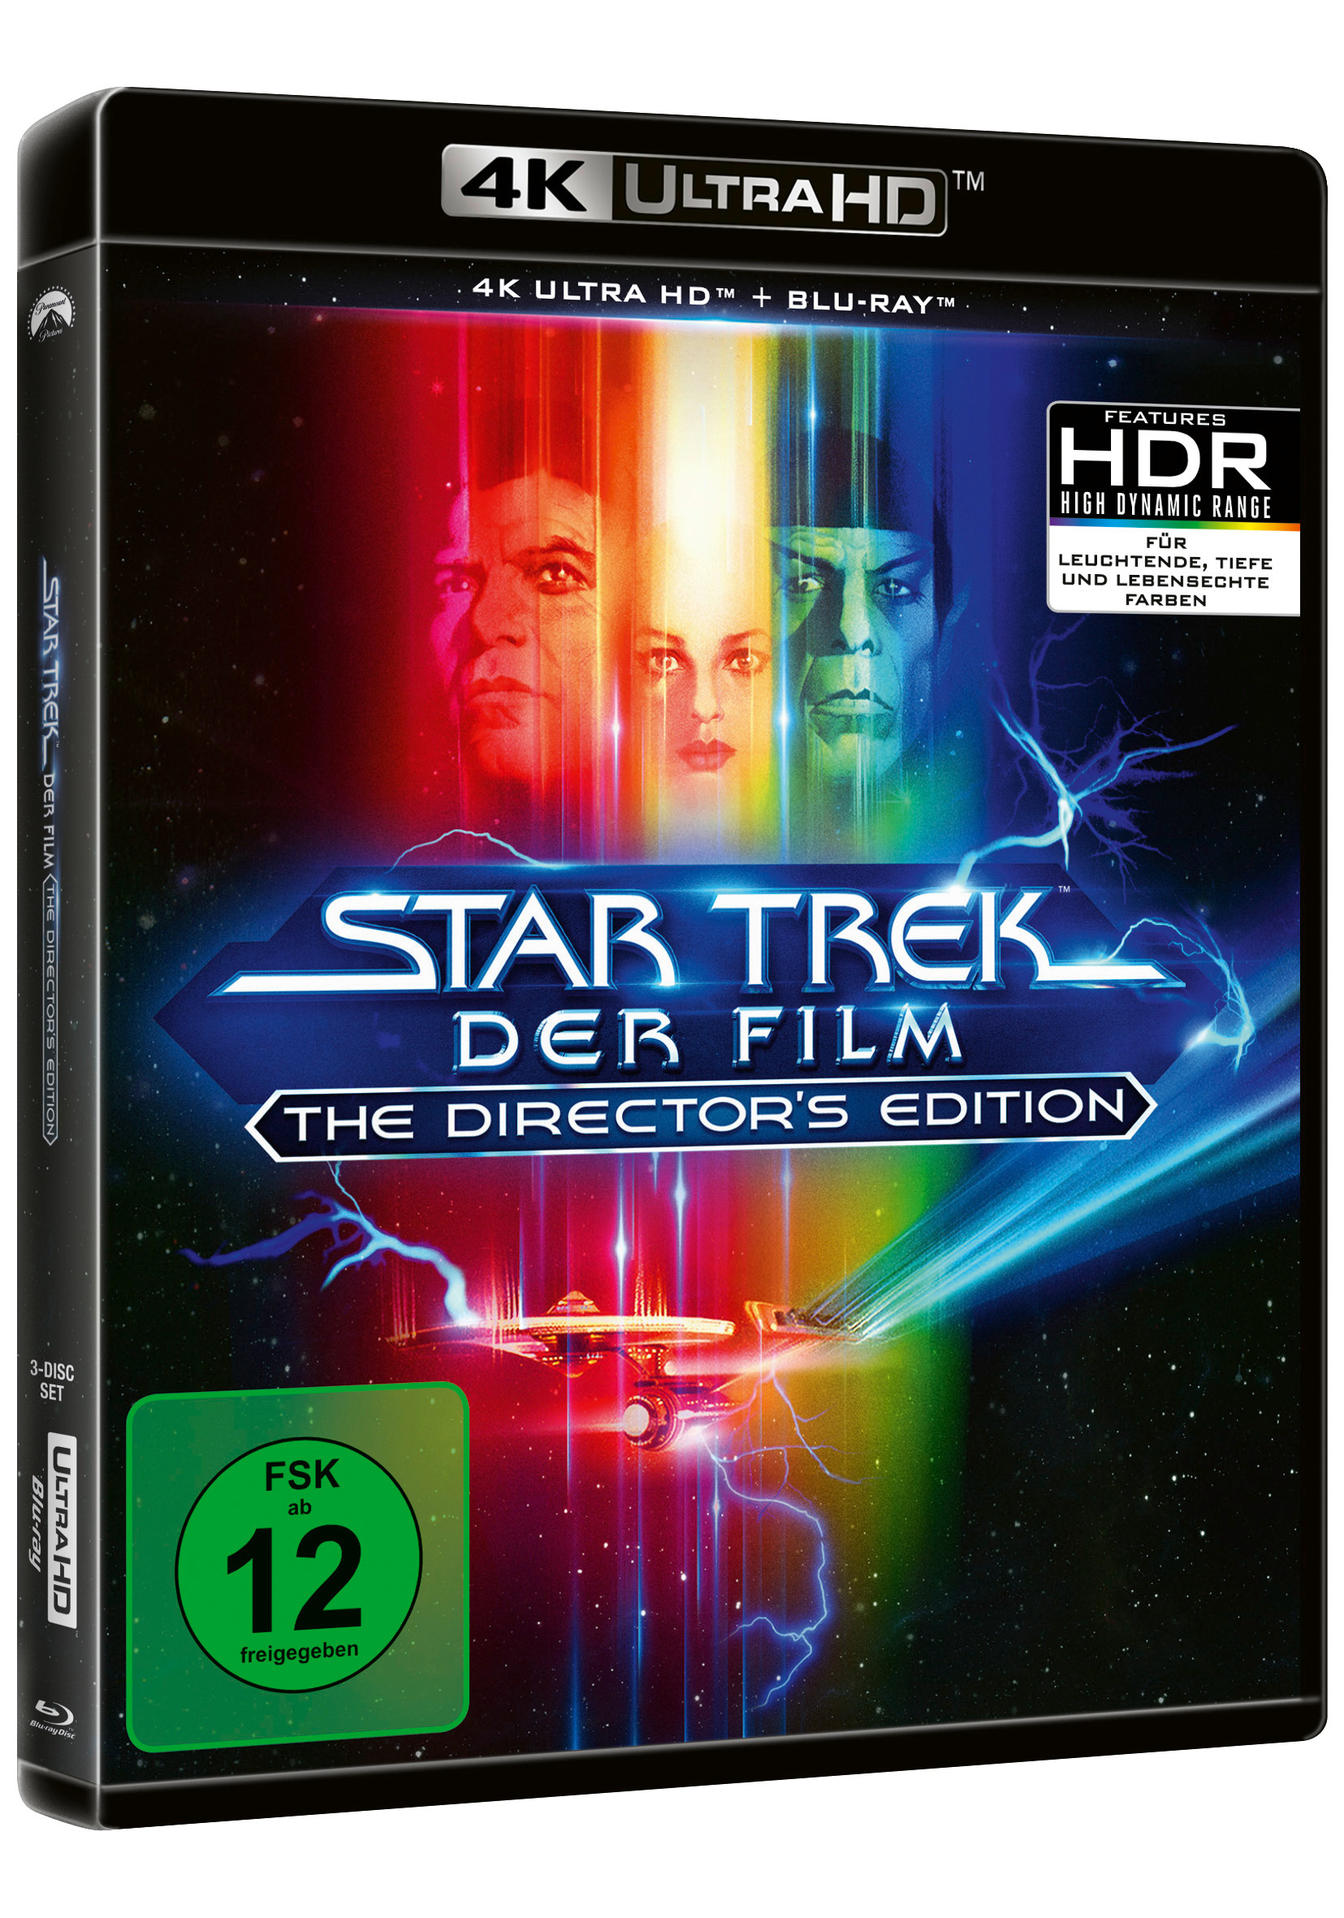 S TREK 4K Blu-ray DIRECTOR I-DER HD STAR Ultra FILM-THE CUT